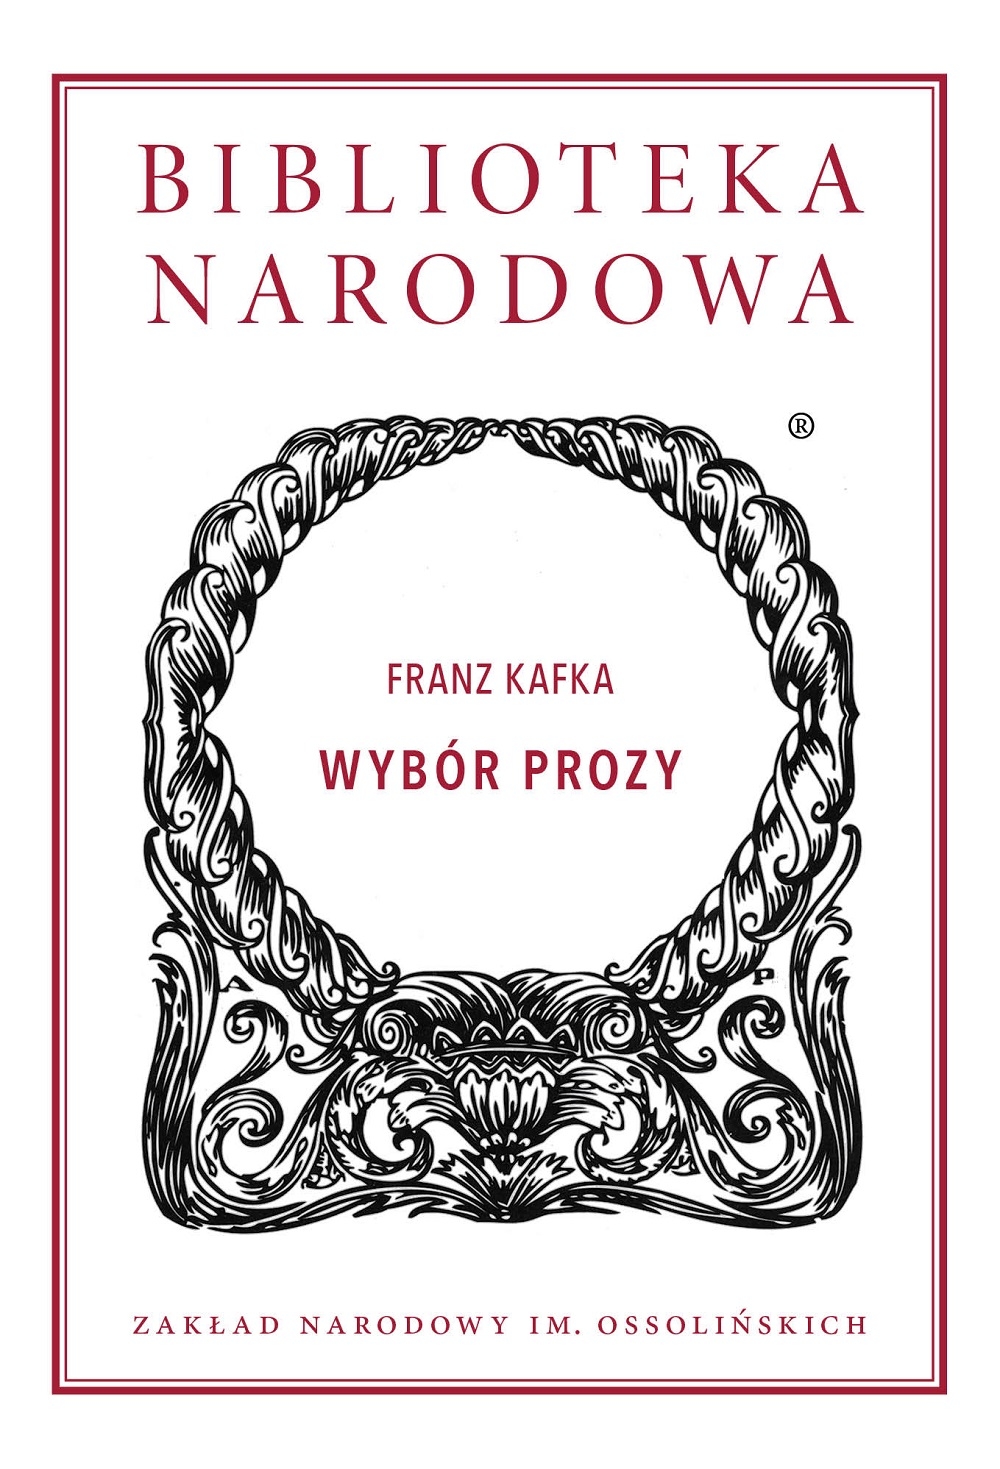 Franz Kafka, „Wybór prozy”, Biblioteka Narodowa, 2018 (źródło: materiały prasowe wydawcy)